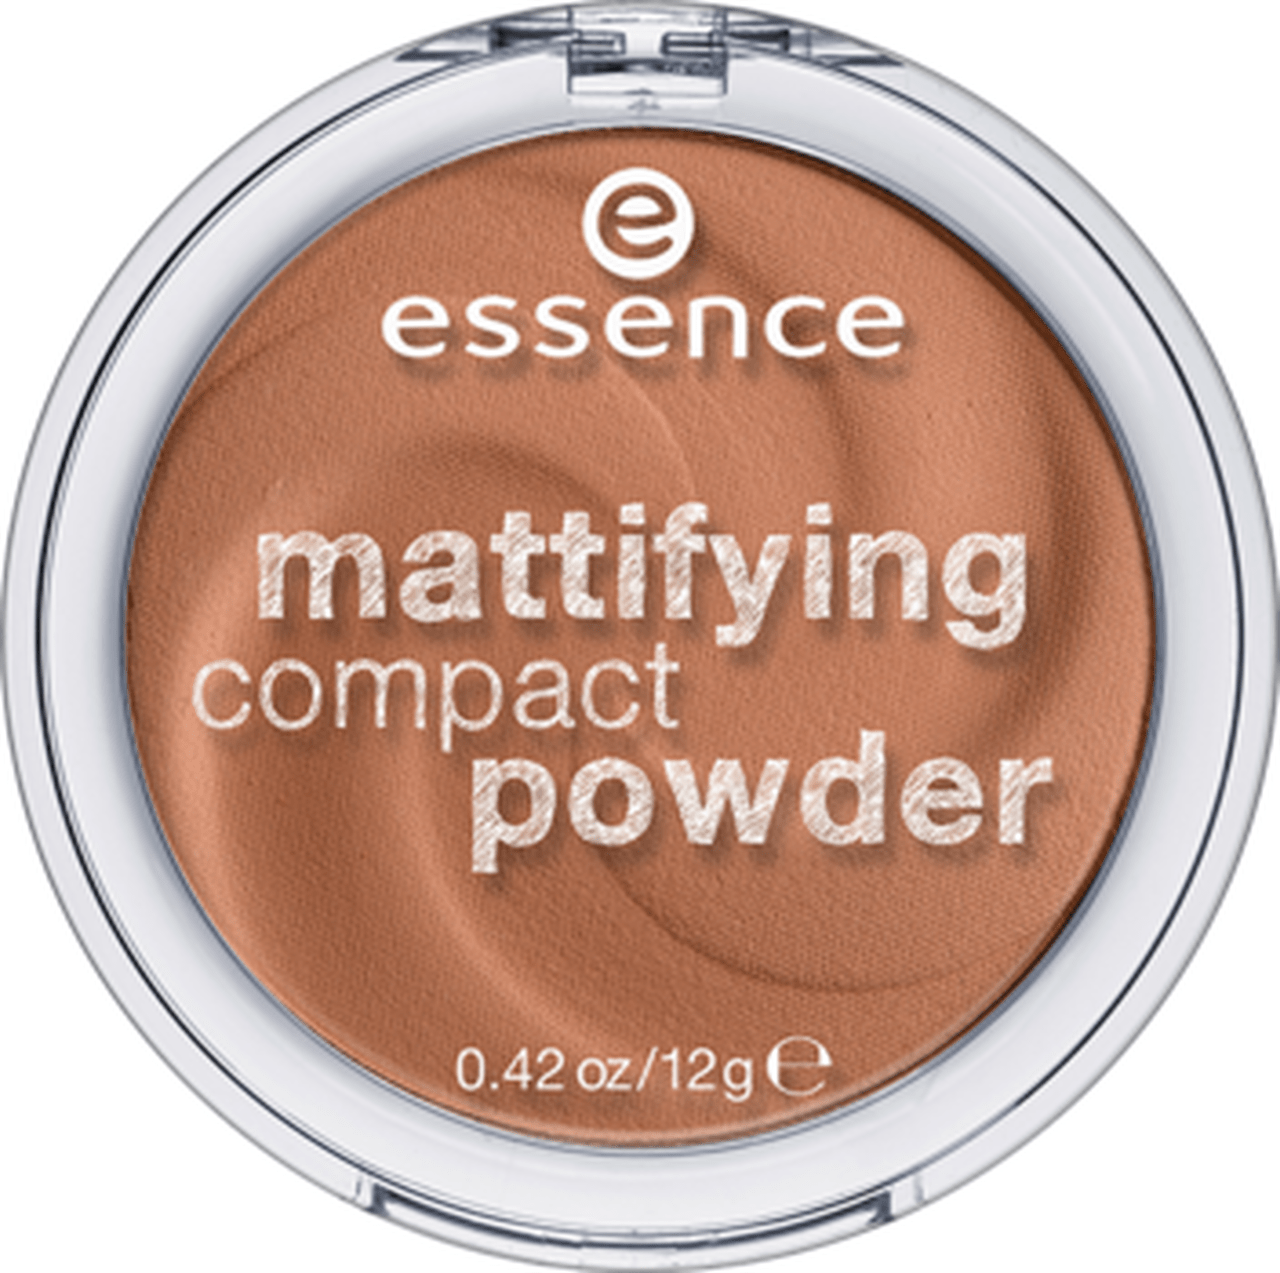 Essence Mattifying Compact Powder 43 Minoustore